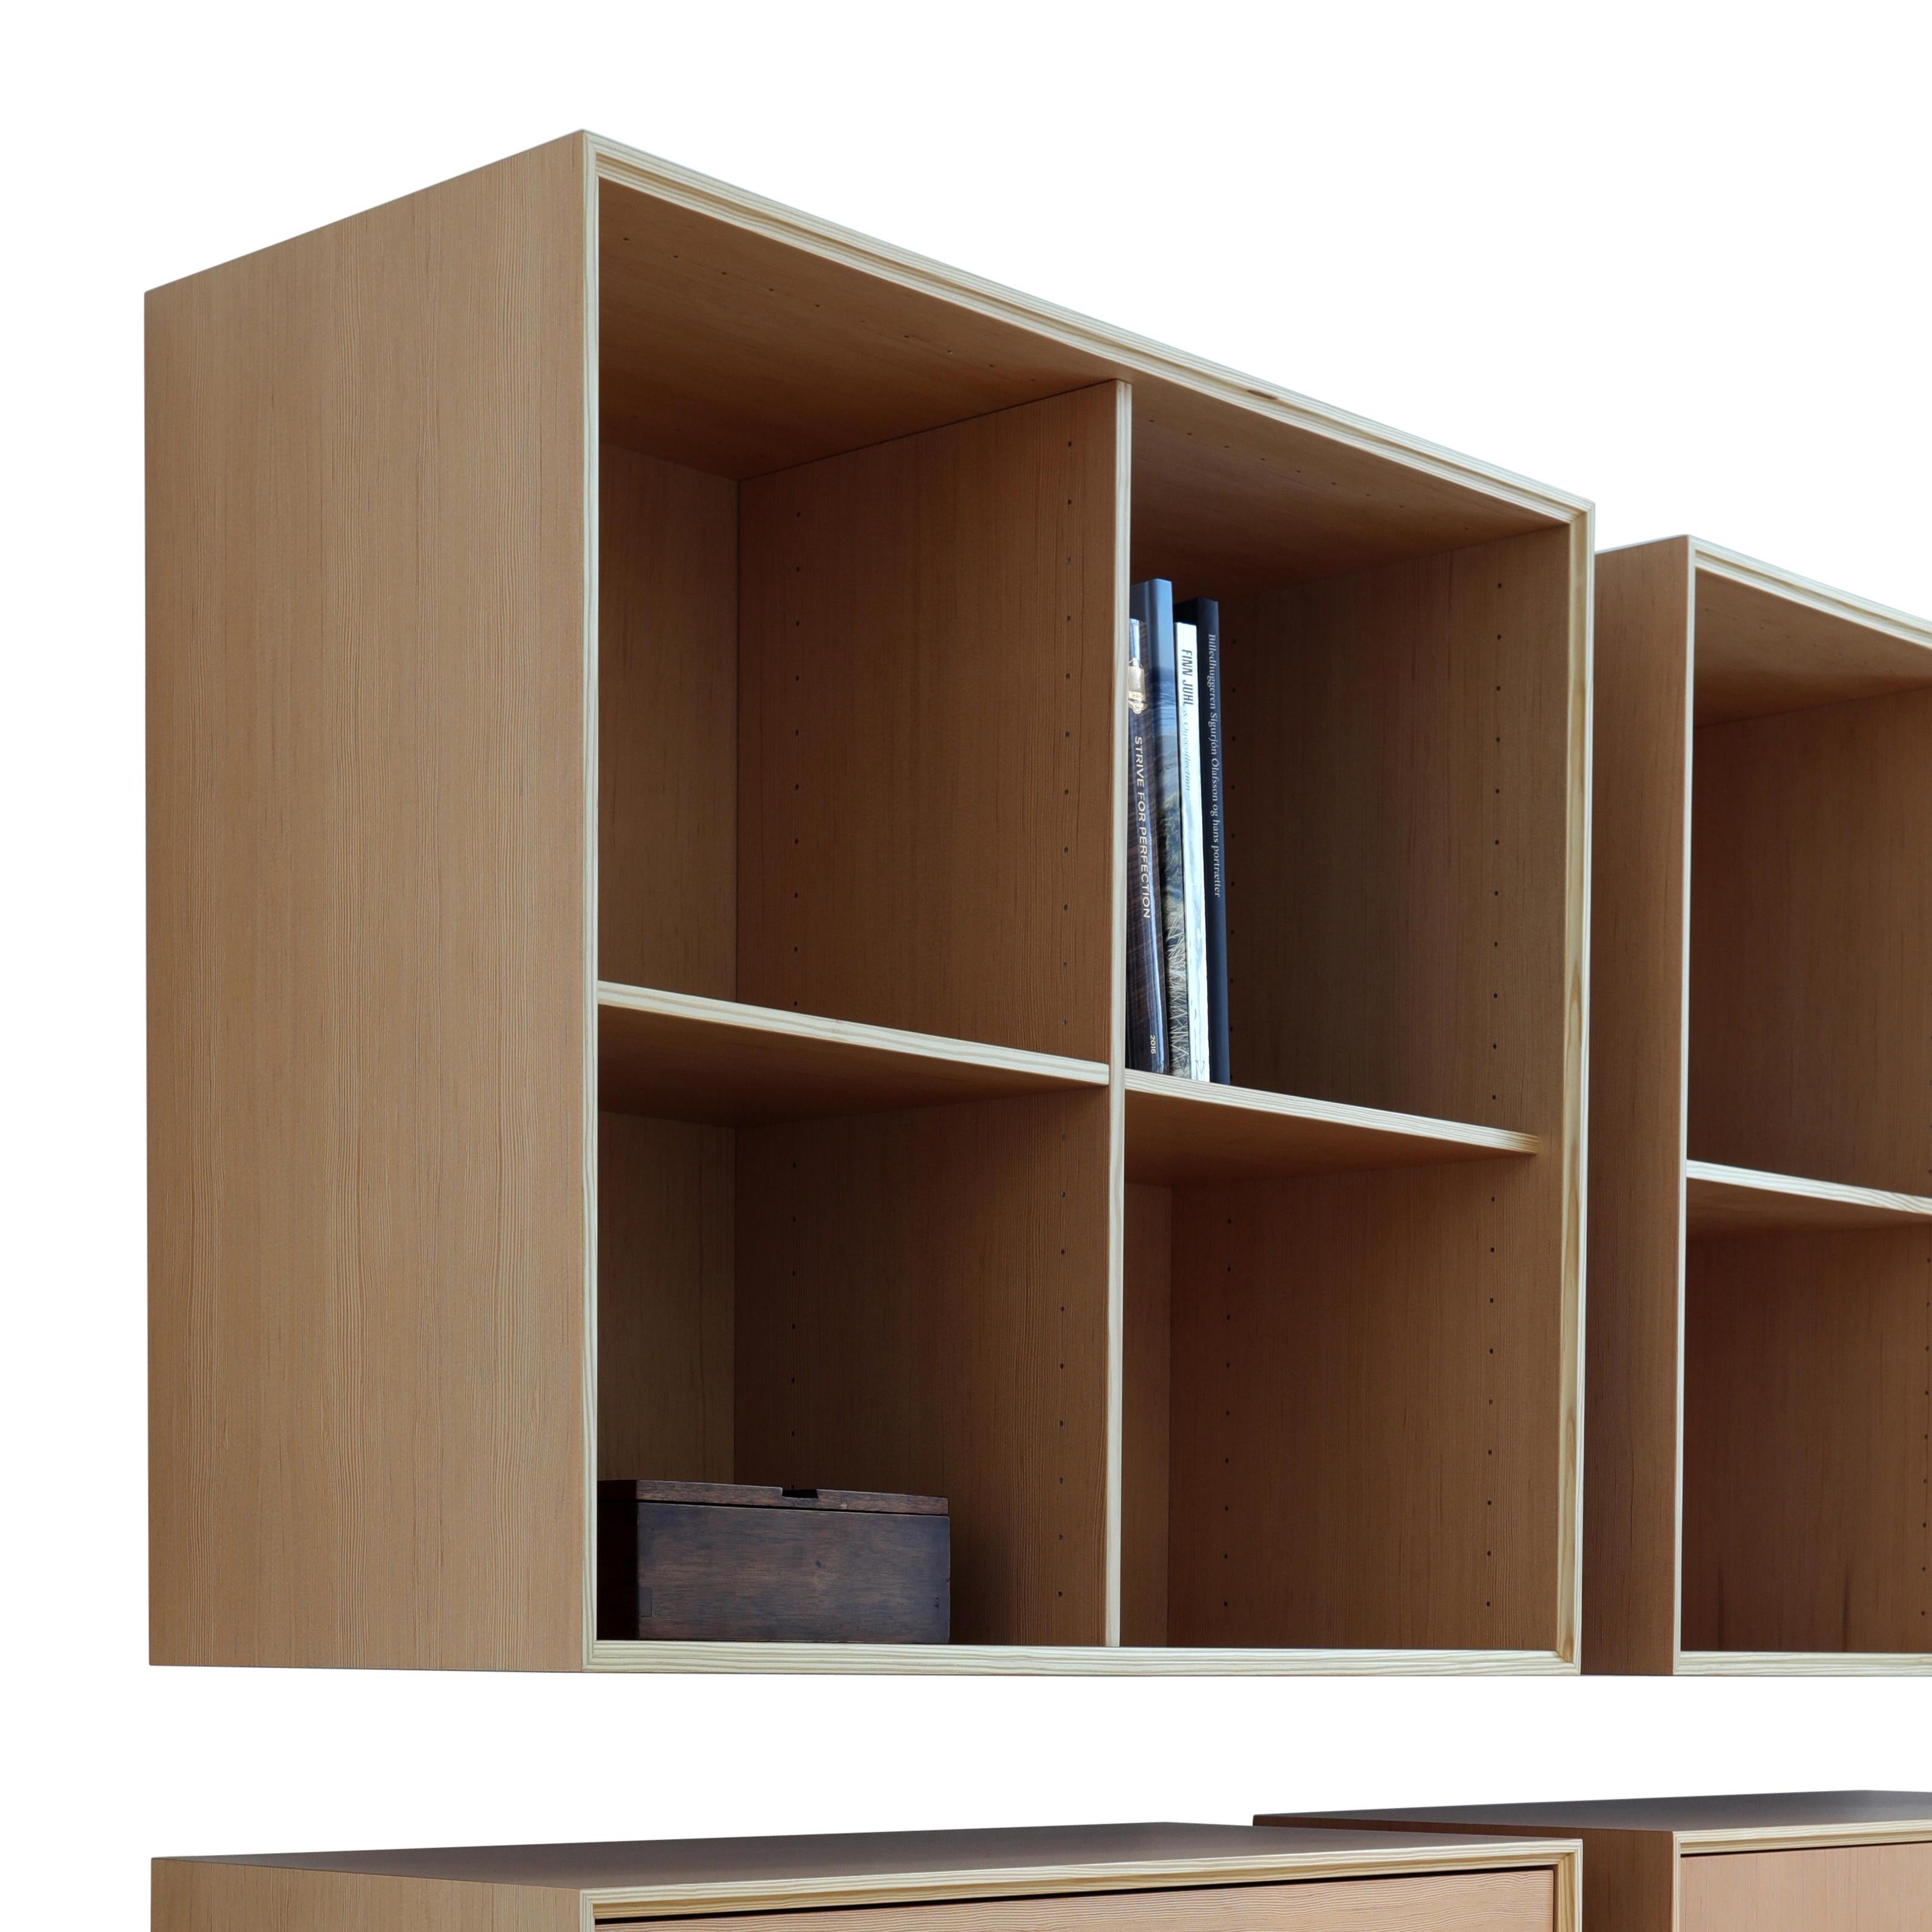 La bibliothèque Classic a été conçue par Henrik Tengler en 2017 et constitue un système exclusif aux possibilités infinies. Le système offre des solutions de rangement élégantes et flexibles pour la maison privée ou le bureau. Choisissez votre style